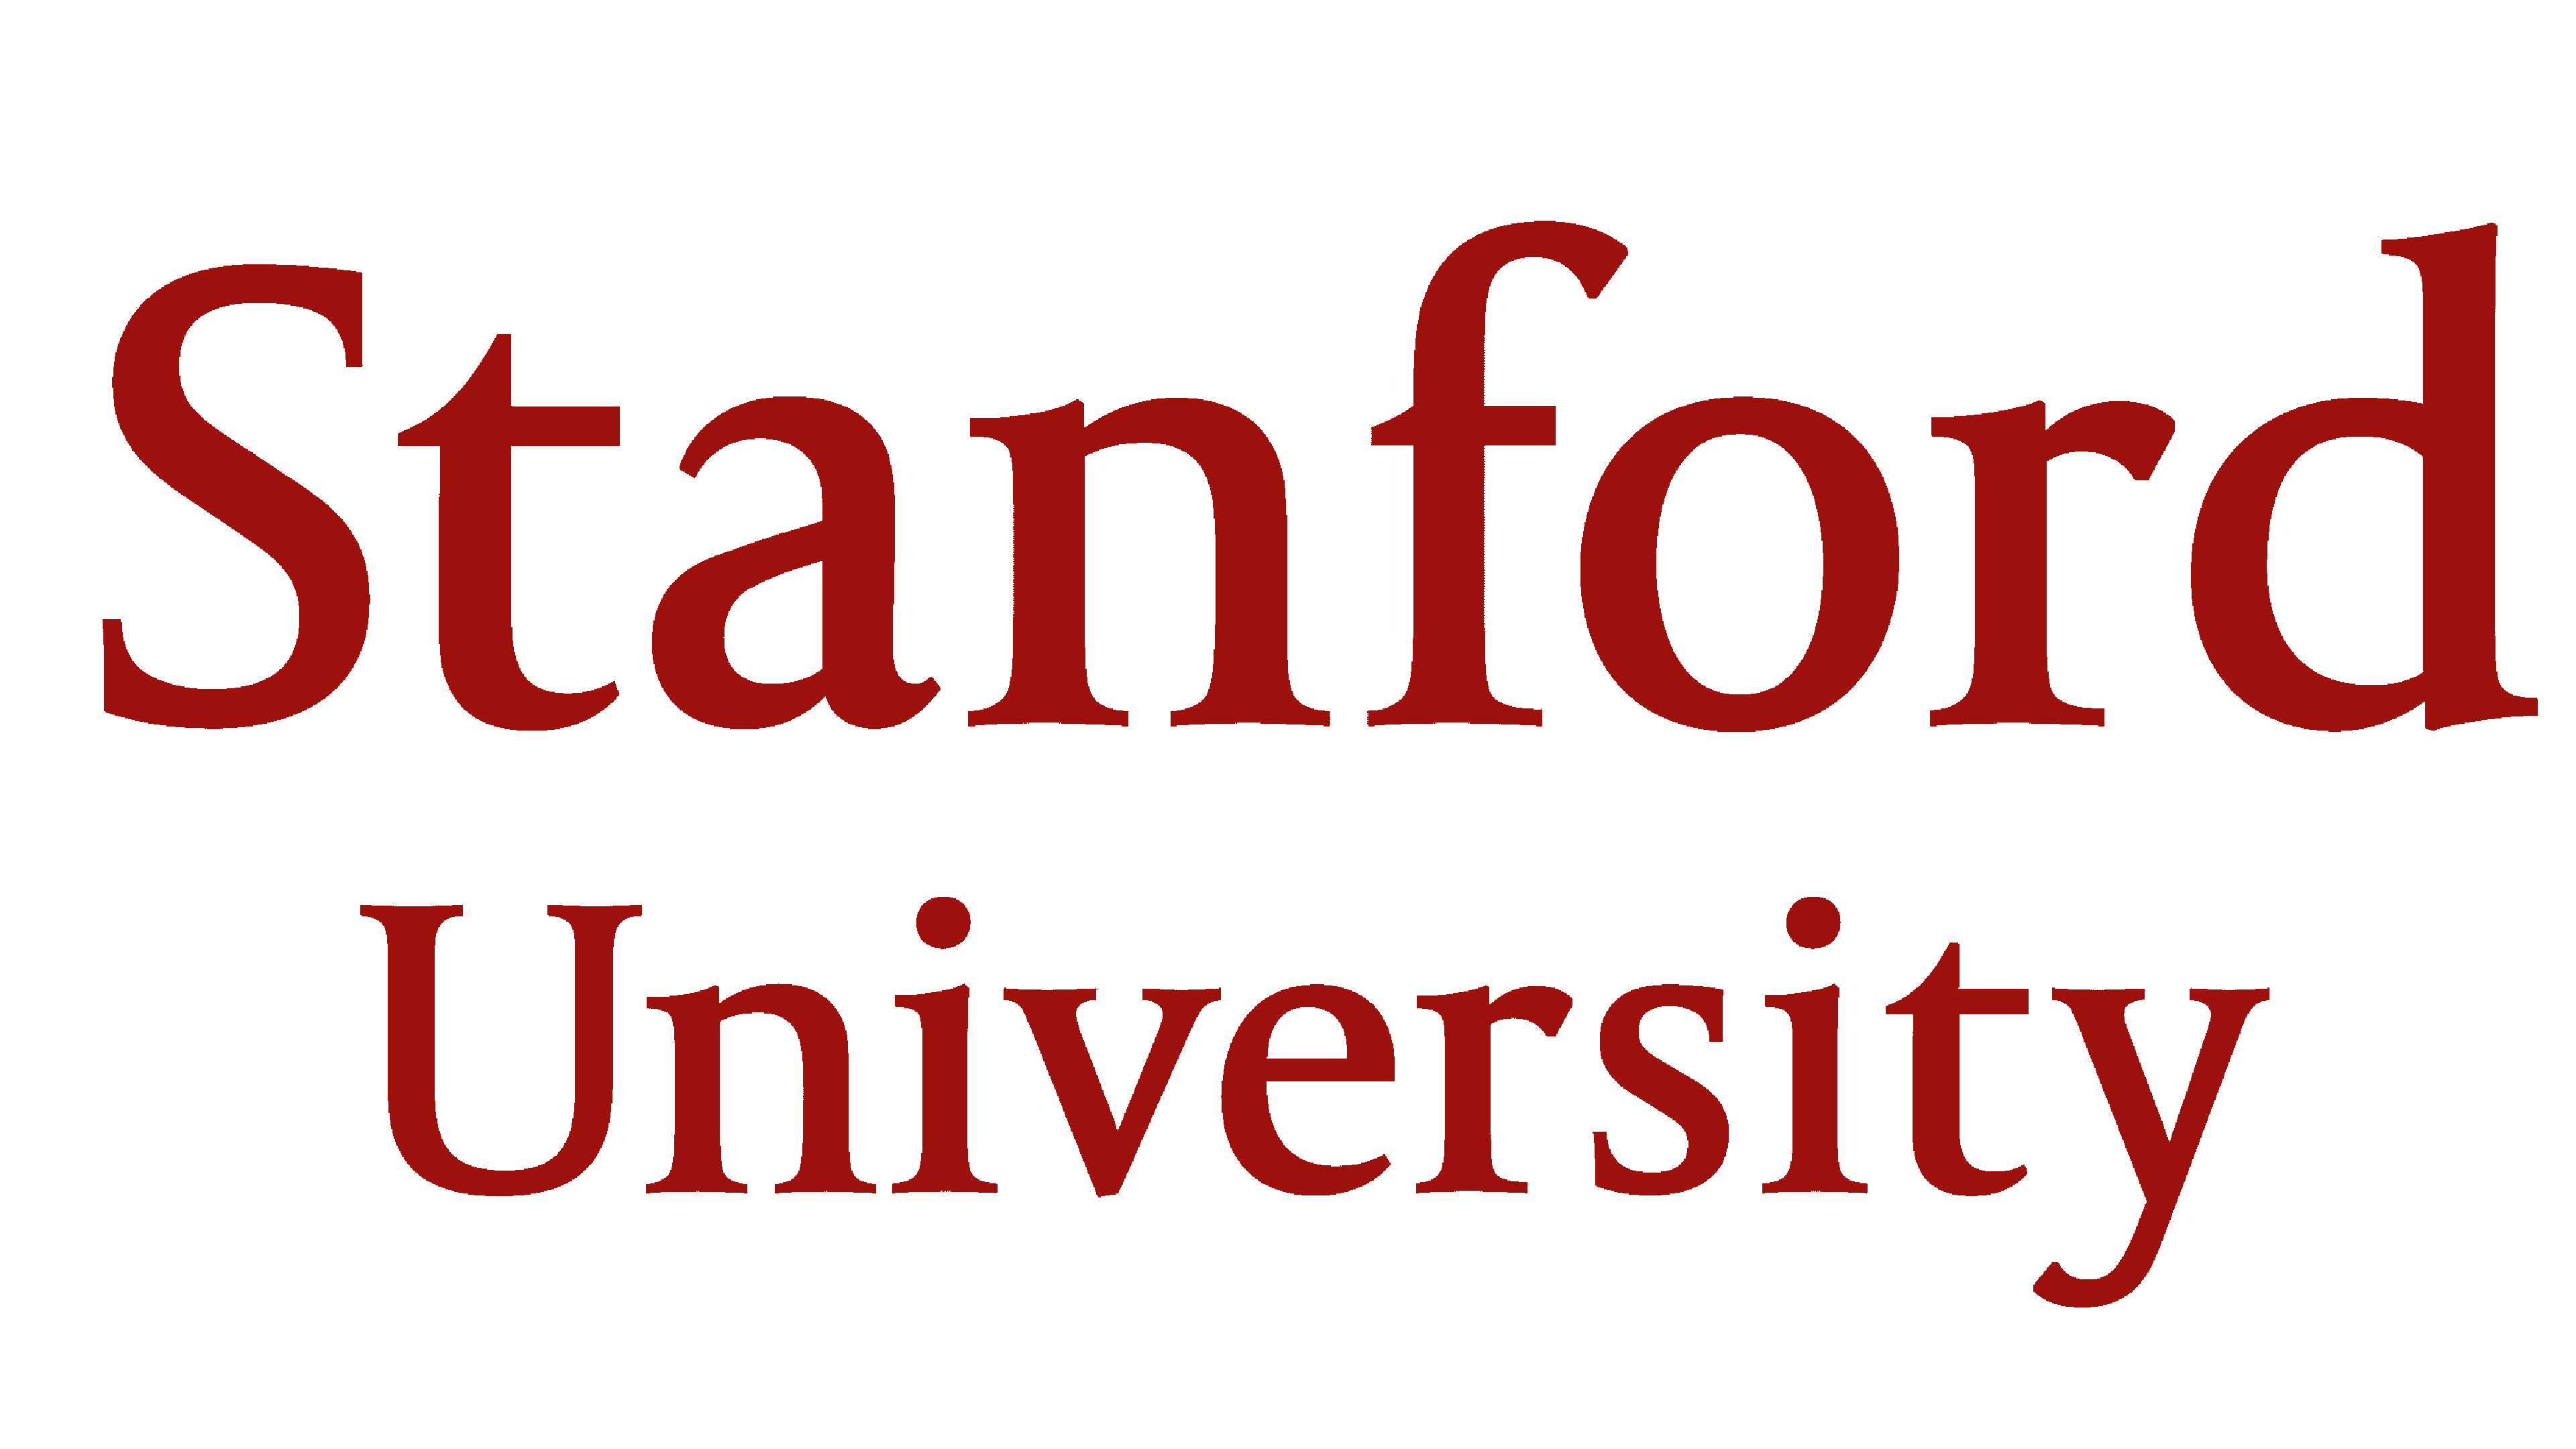 Stanford University Logo Logo